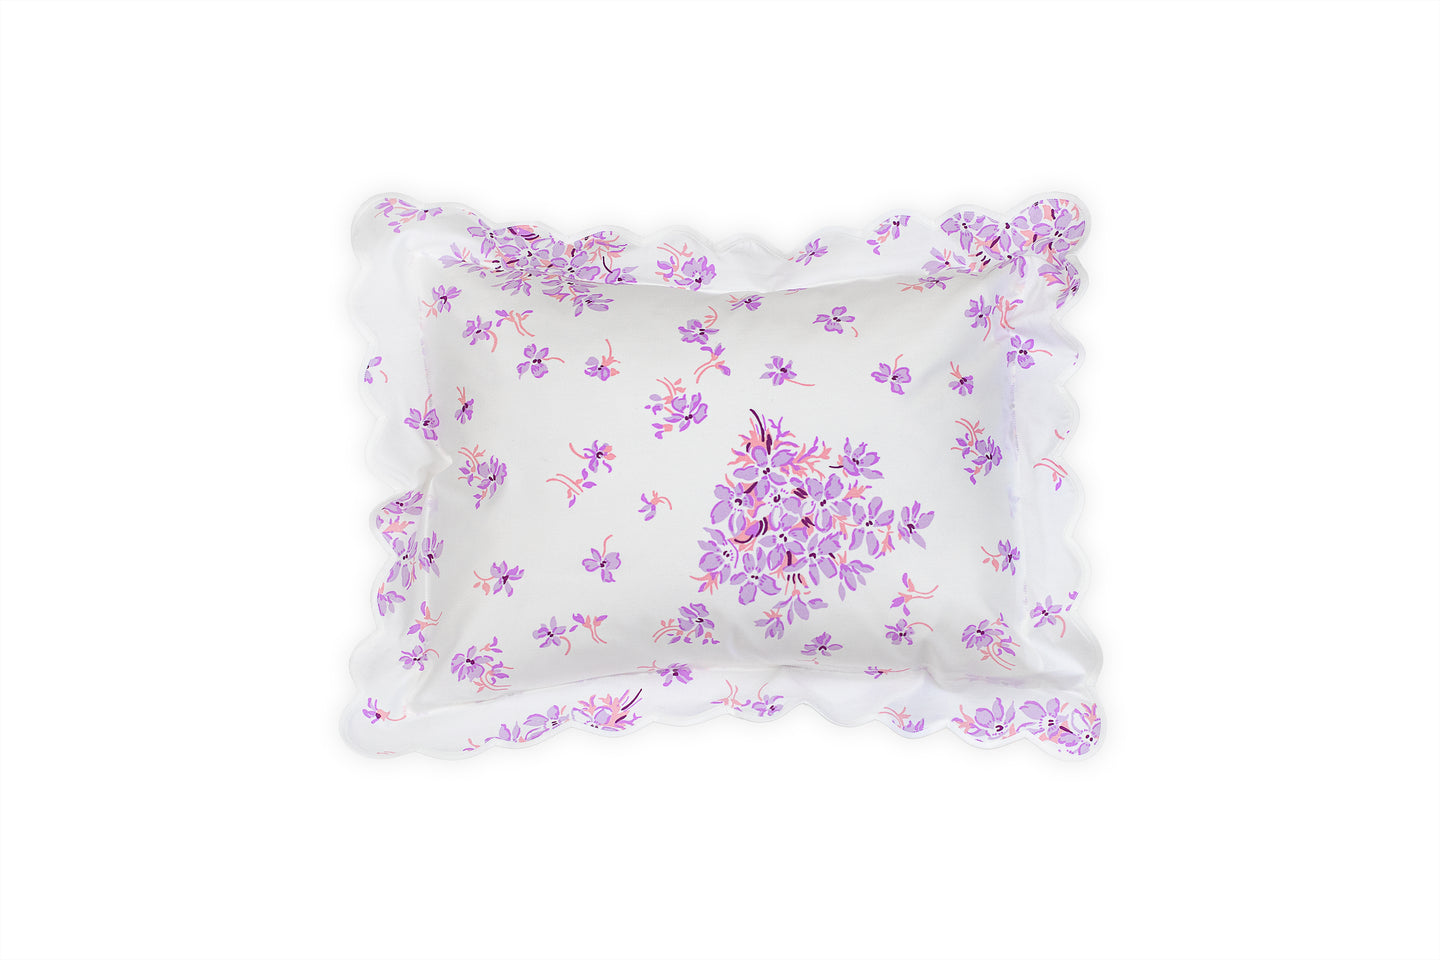 Boudoir Pillow Inserts – D Porthault